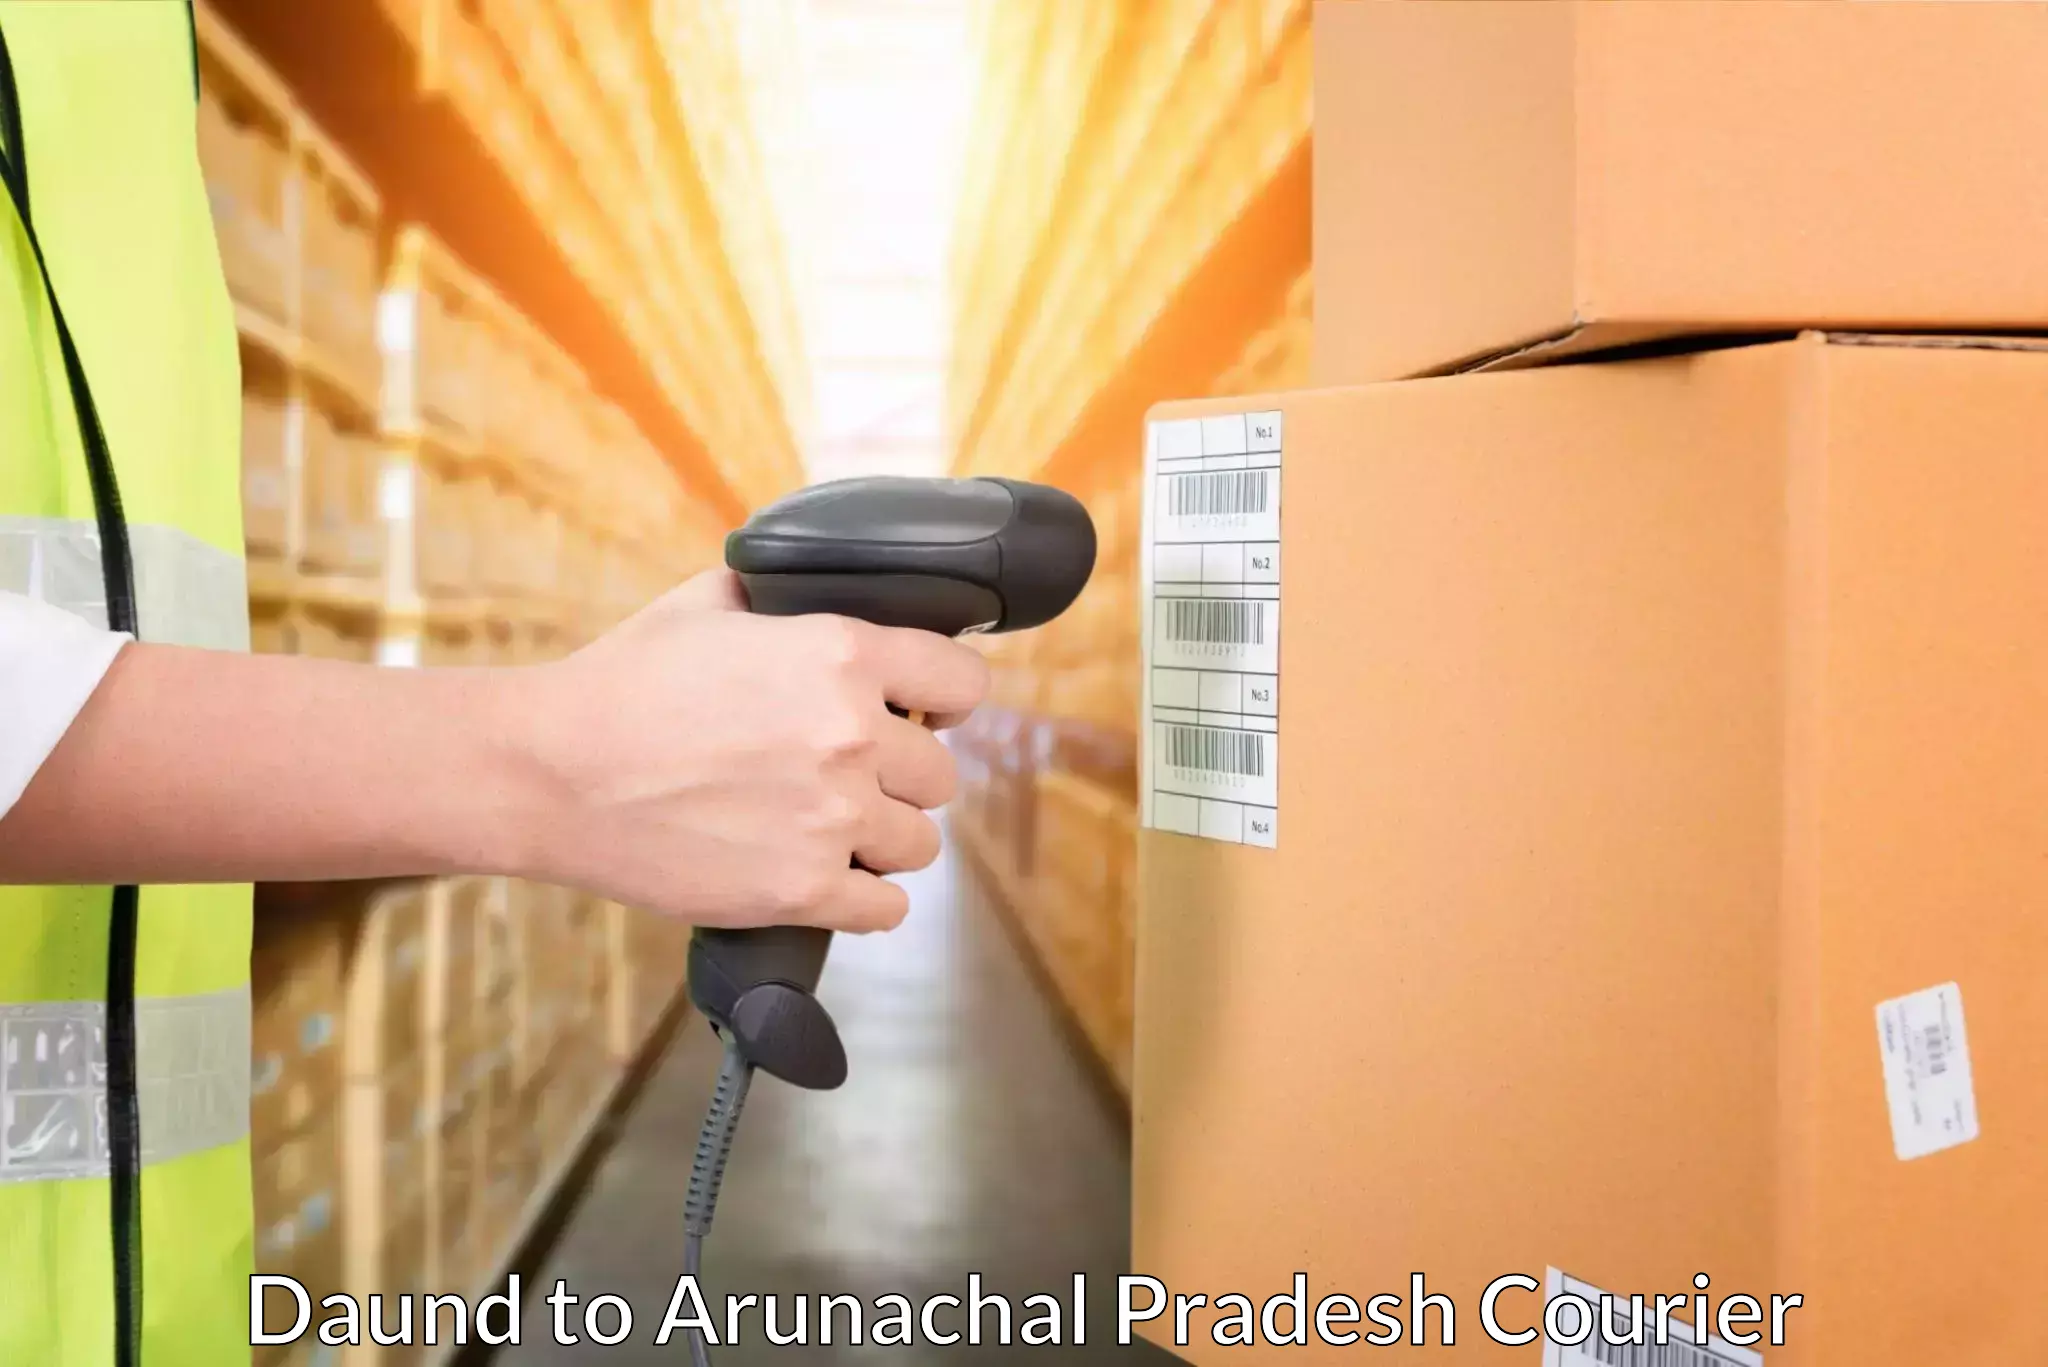 Courier service partnerships Daund to Arunachal Pradesh